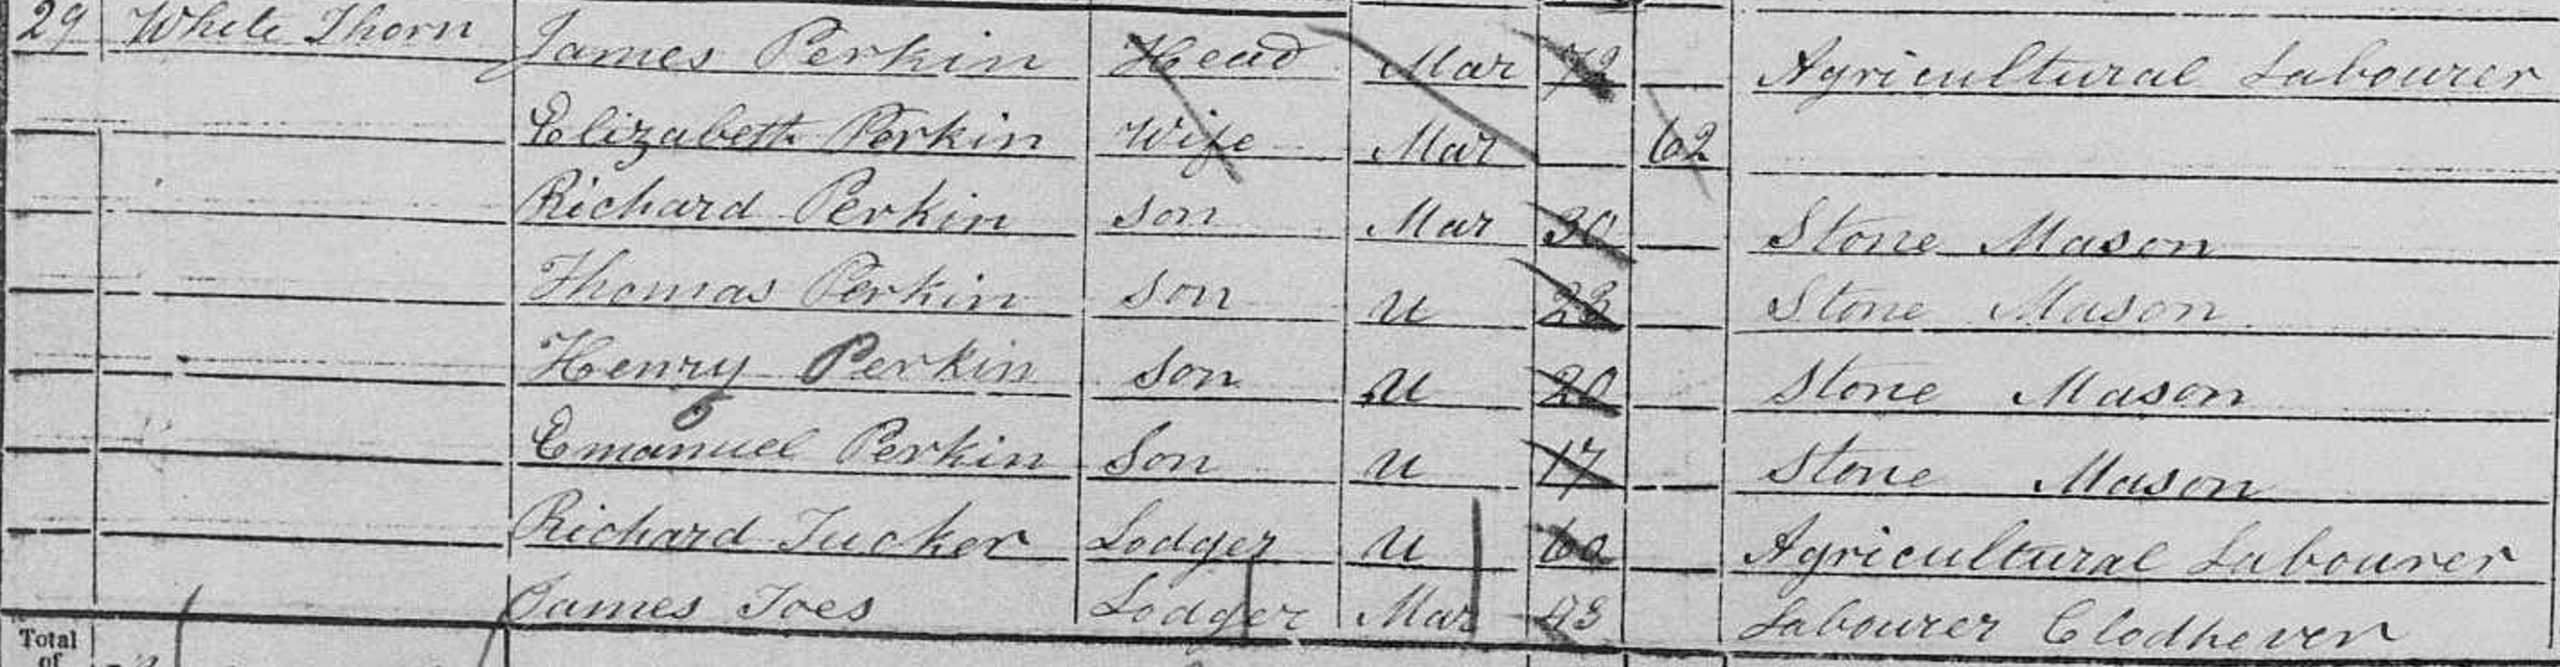 4. Census 1851 a